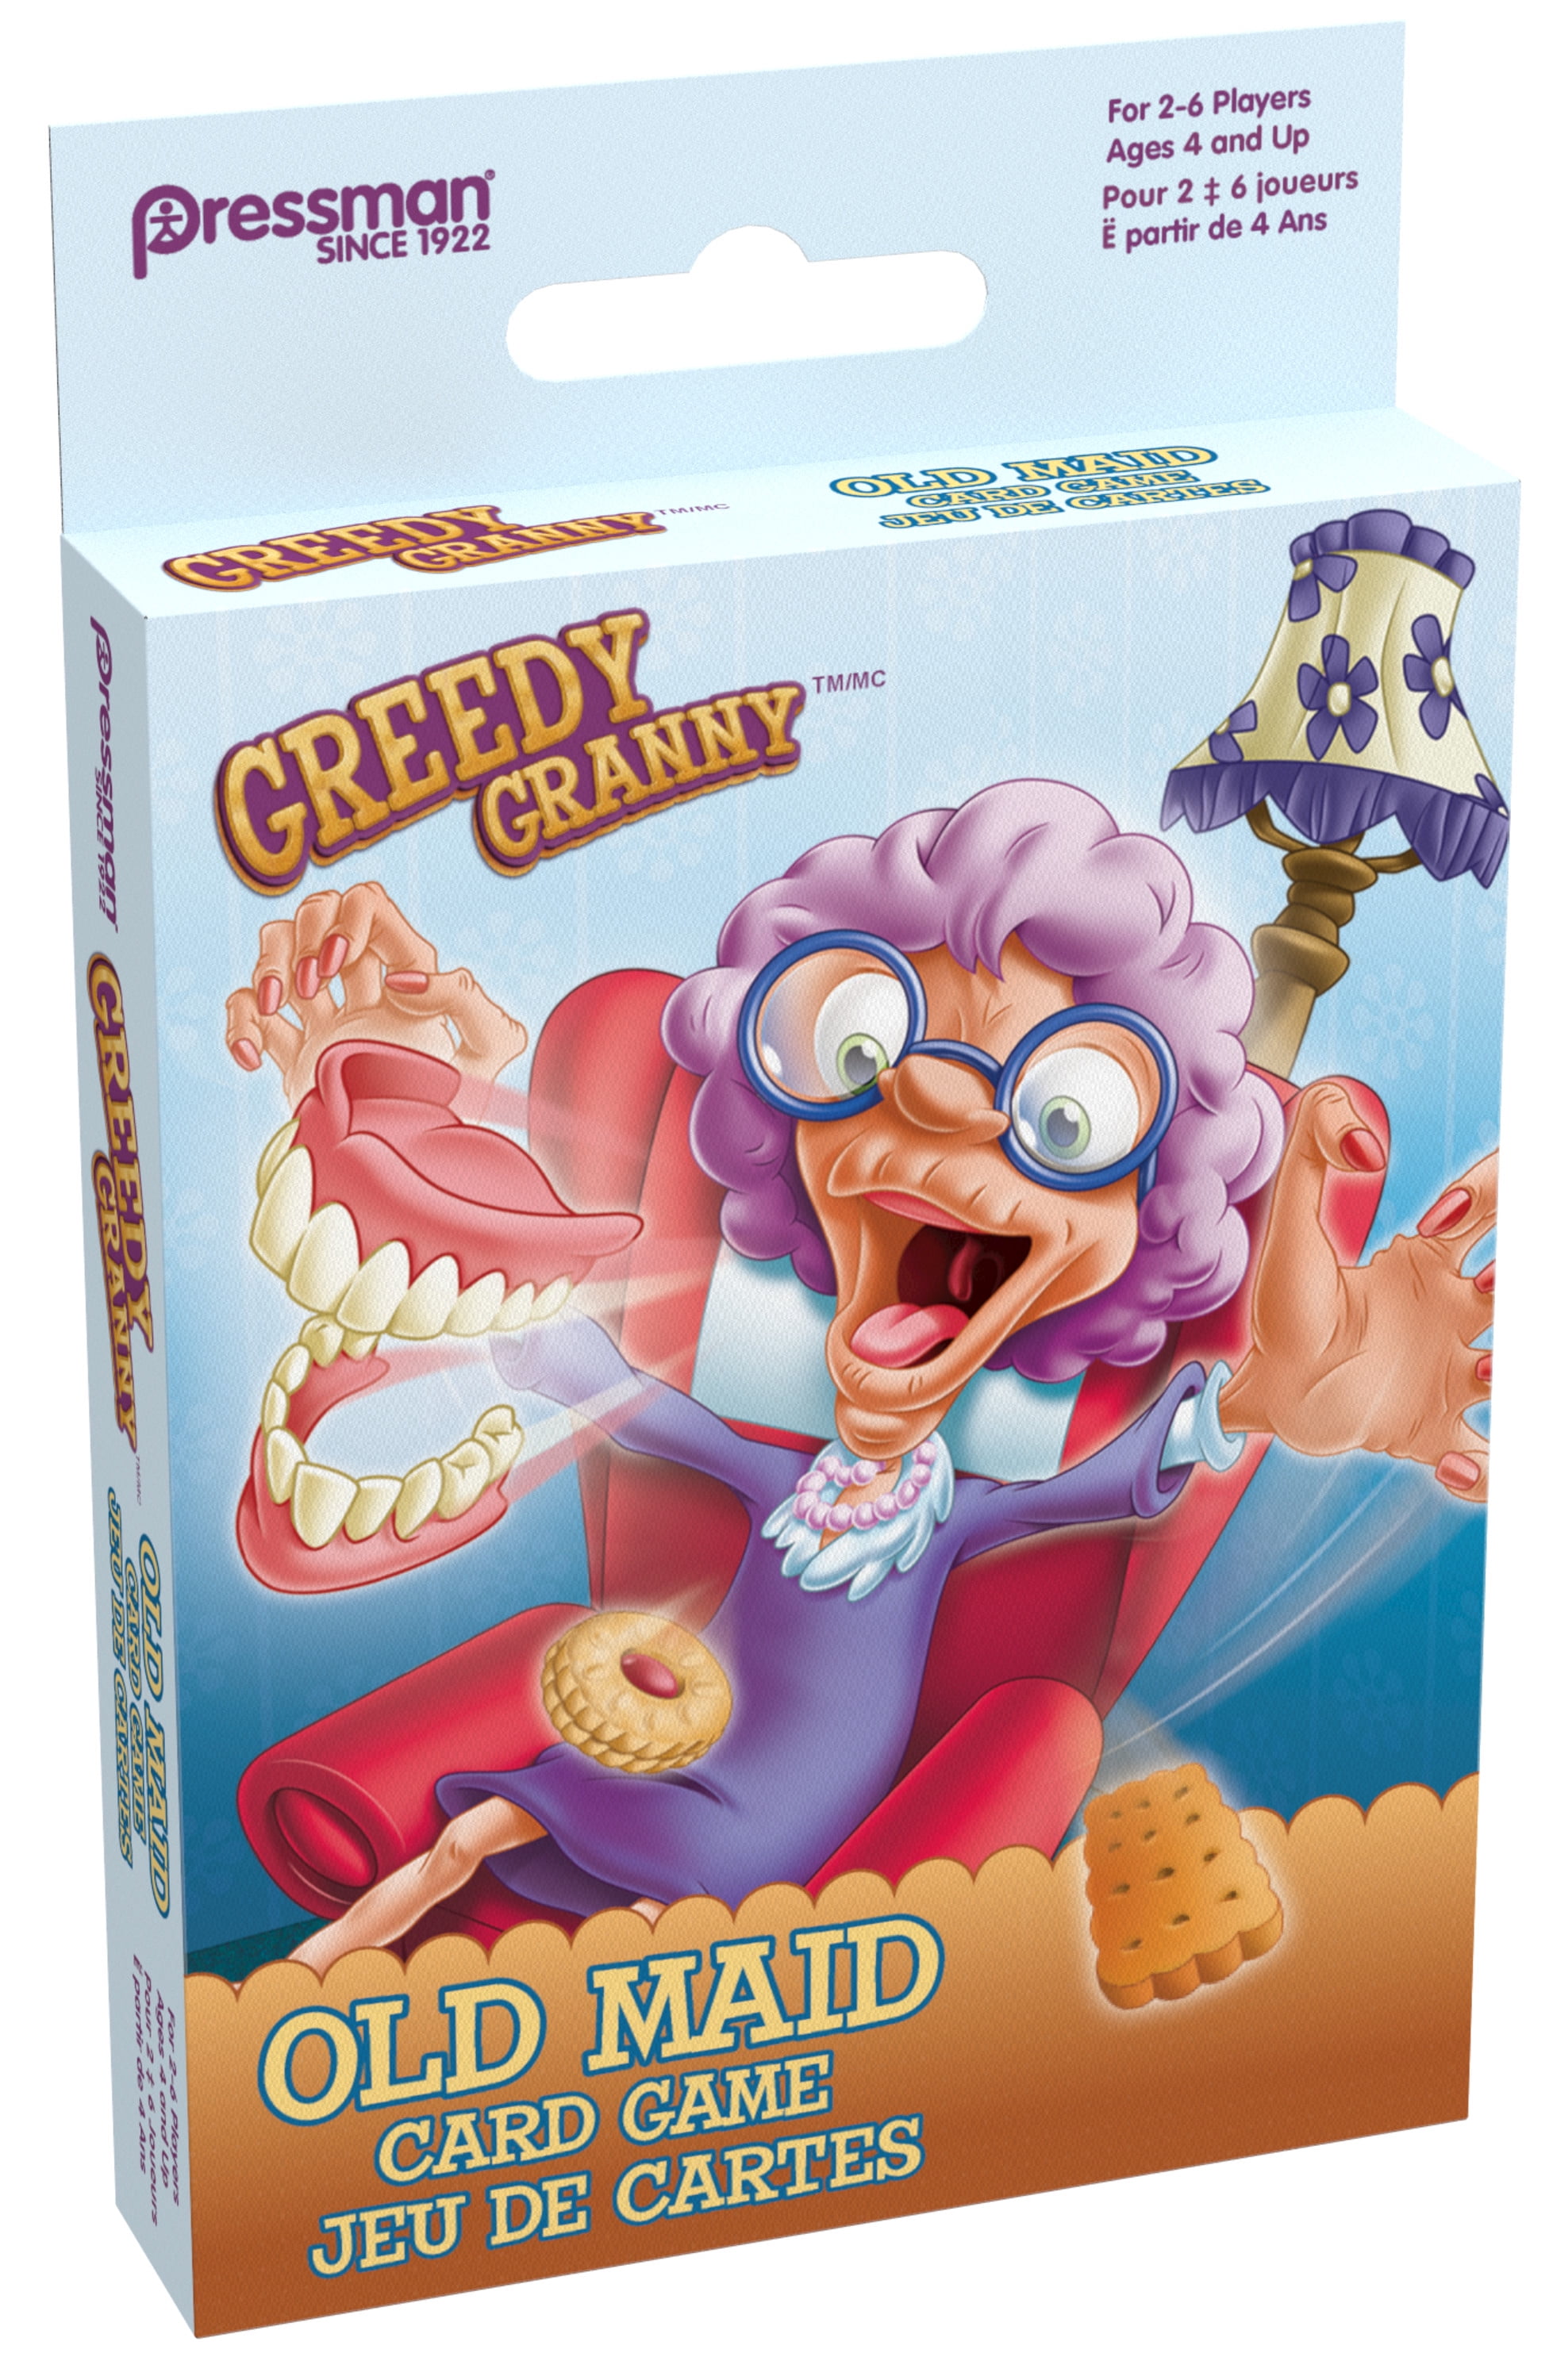 Pressman Greedy Granny Old Maid Card Game - Bilingual - Walmart.com